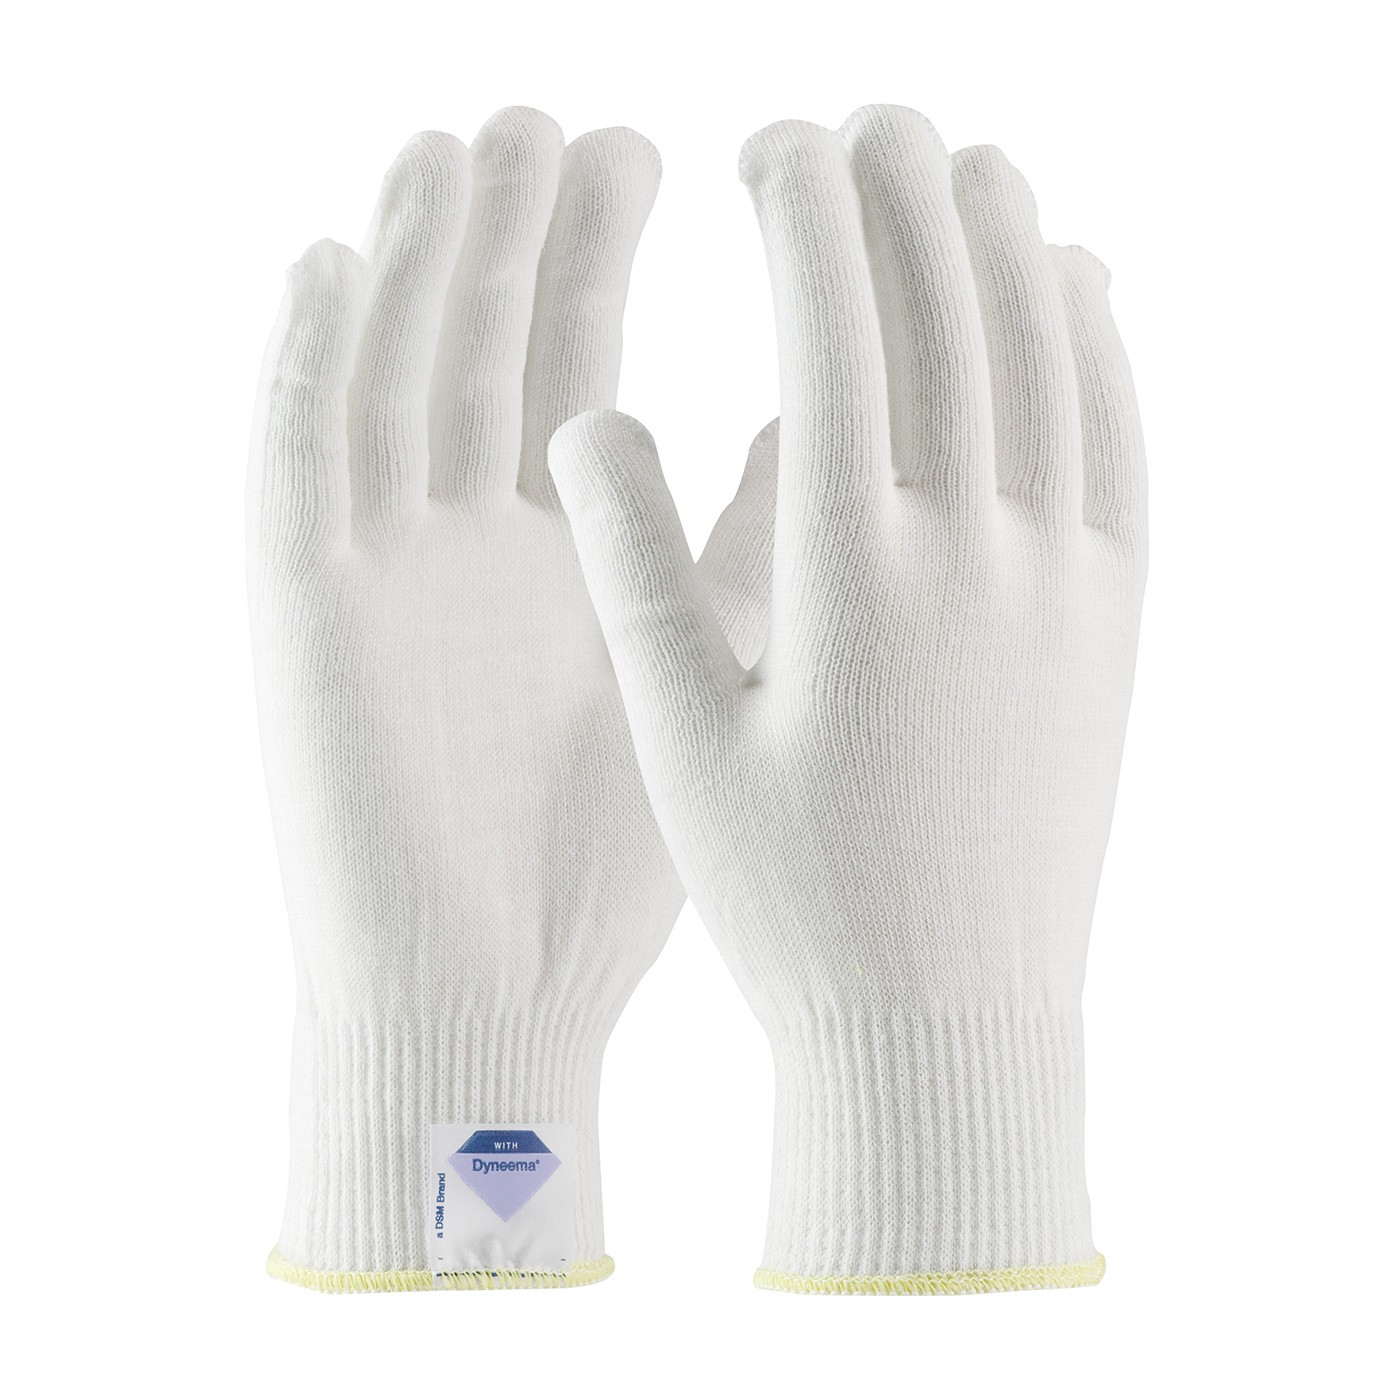 Kut Gard® Seamless Knit Spun Dyneema® Glove - Light Weight  (#17-SD200)